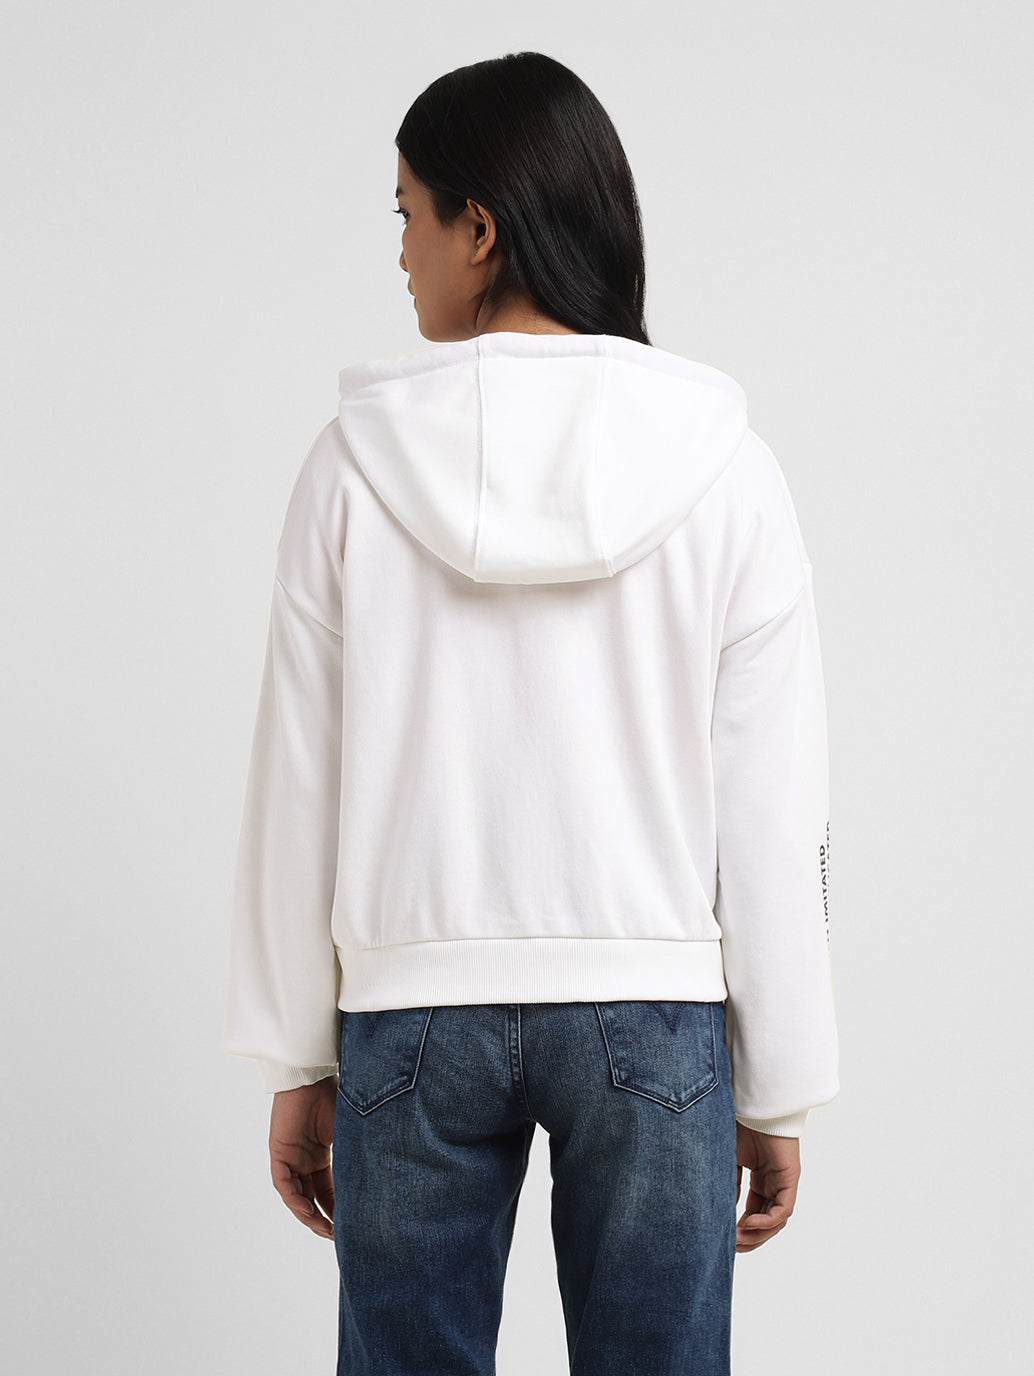 Women's Graphic Print White Hooded Sweatshirt